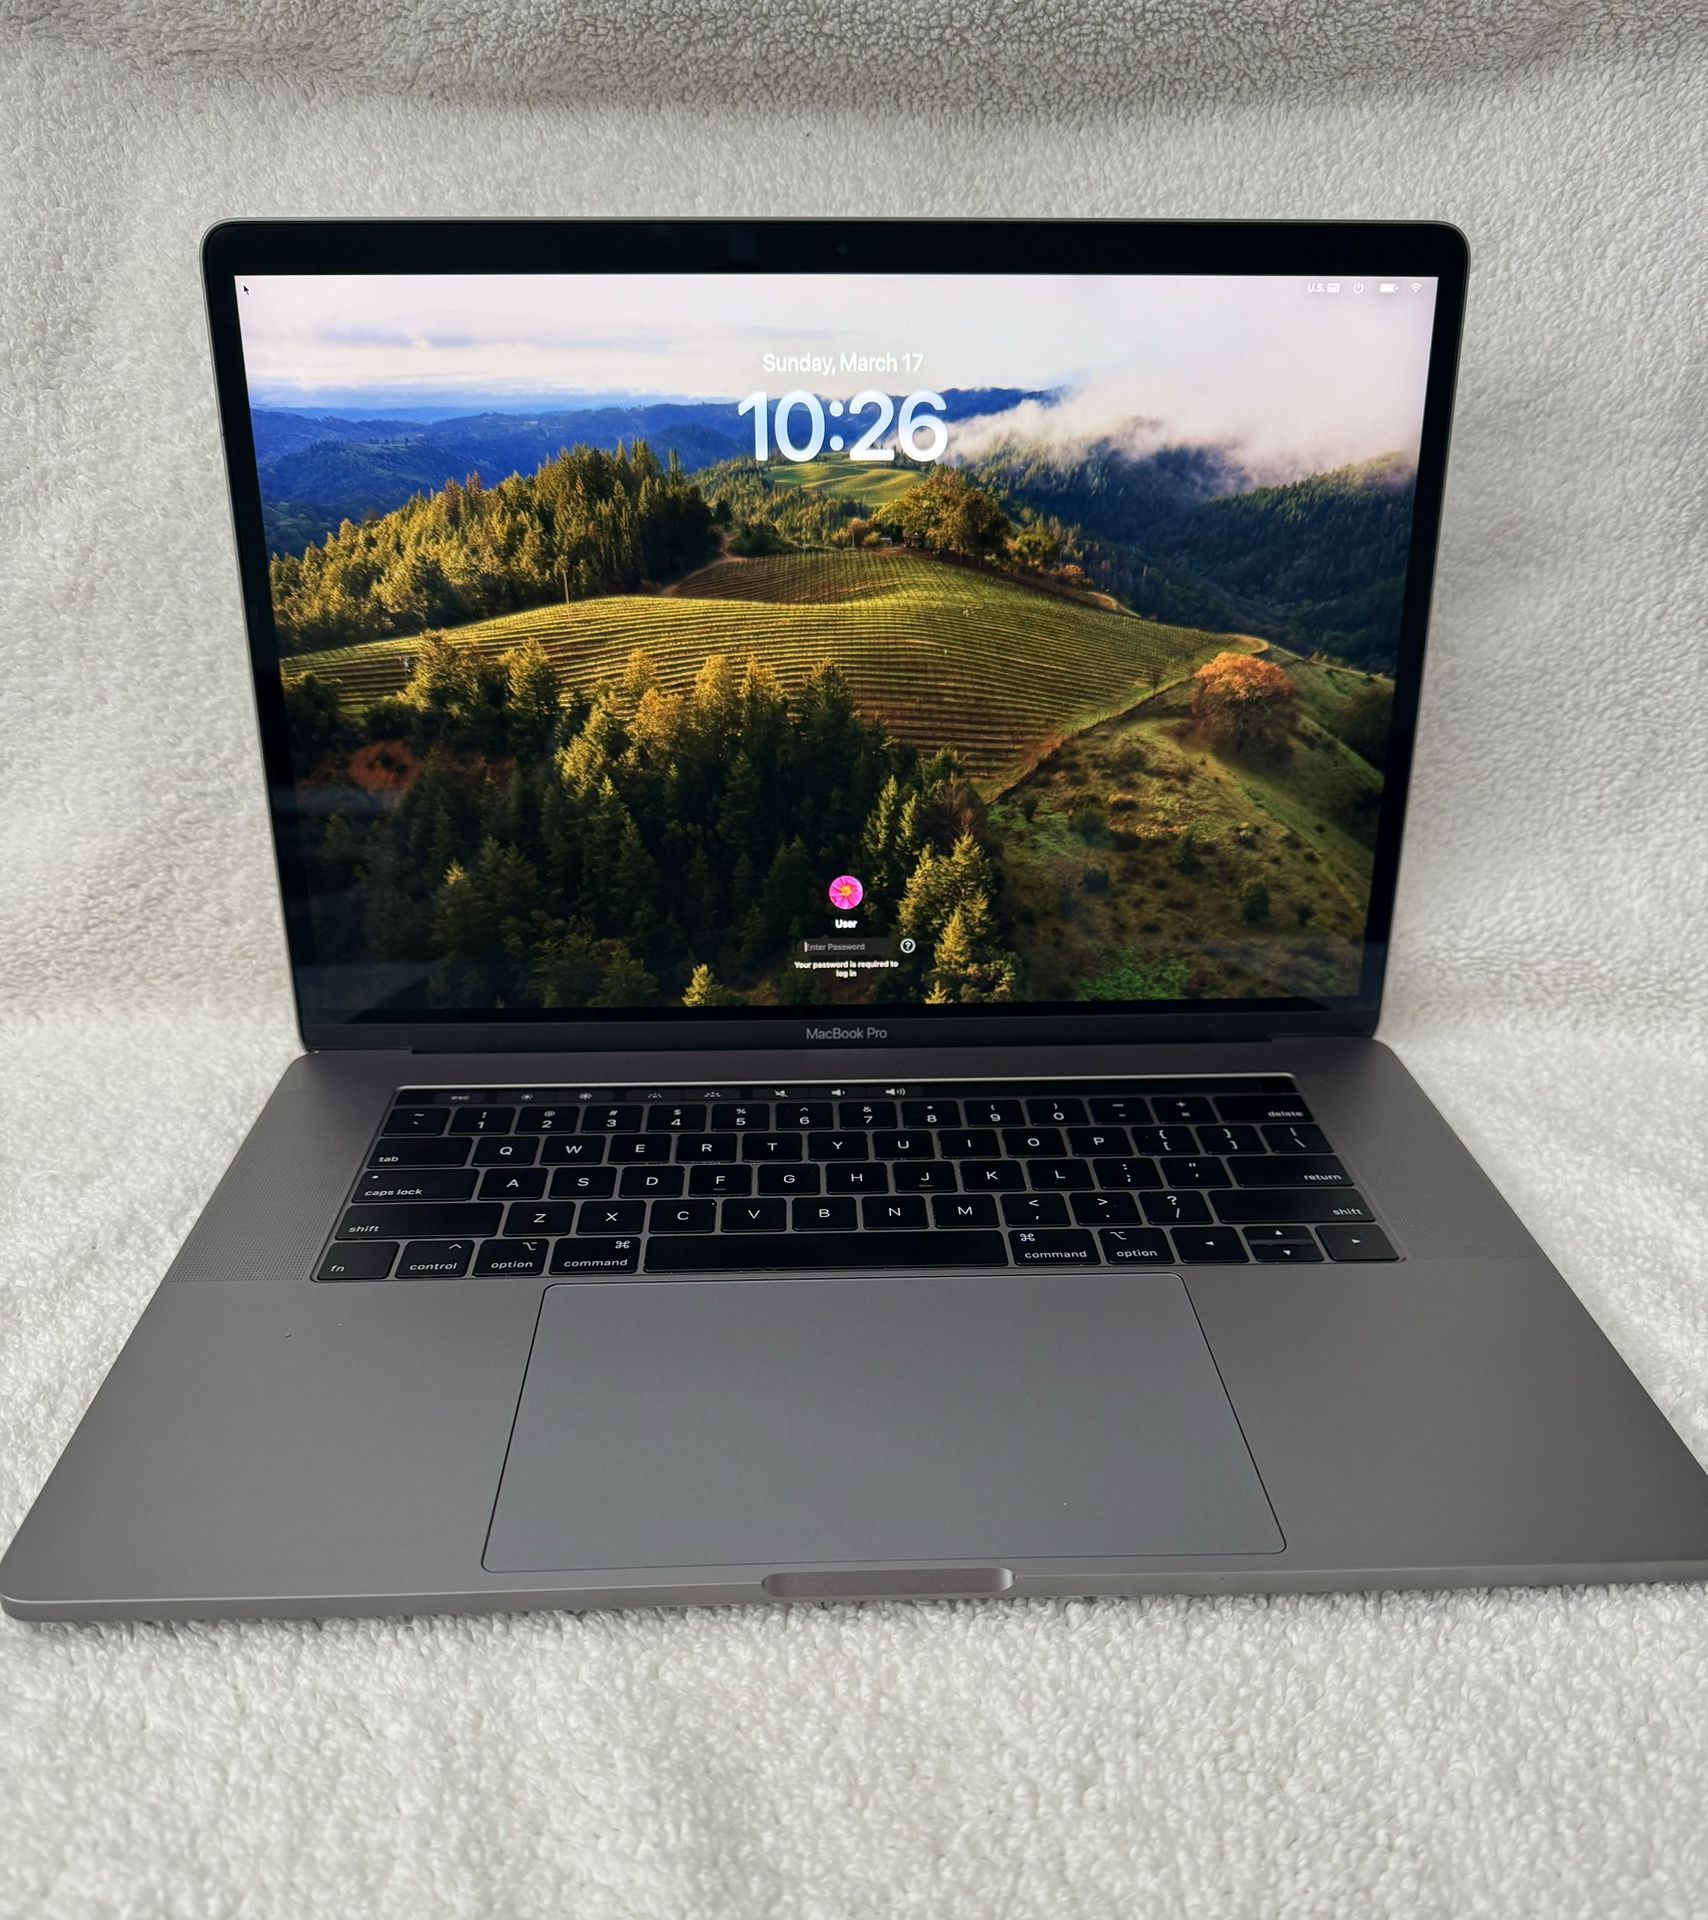 MacBook Pro -15 Inch